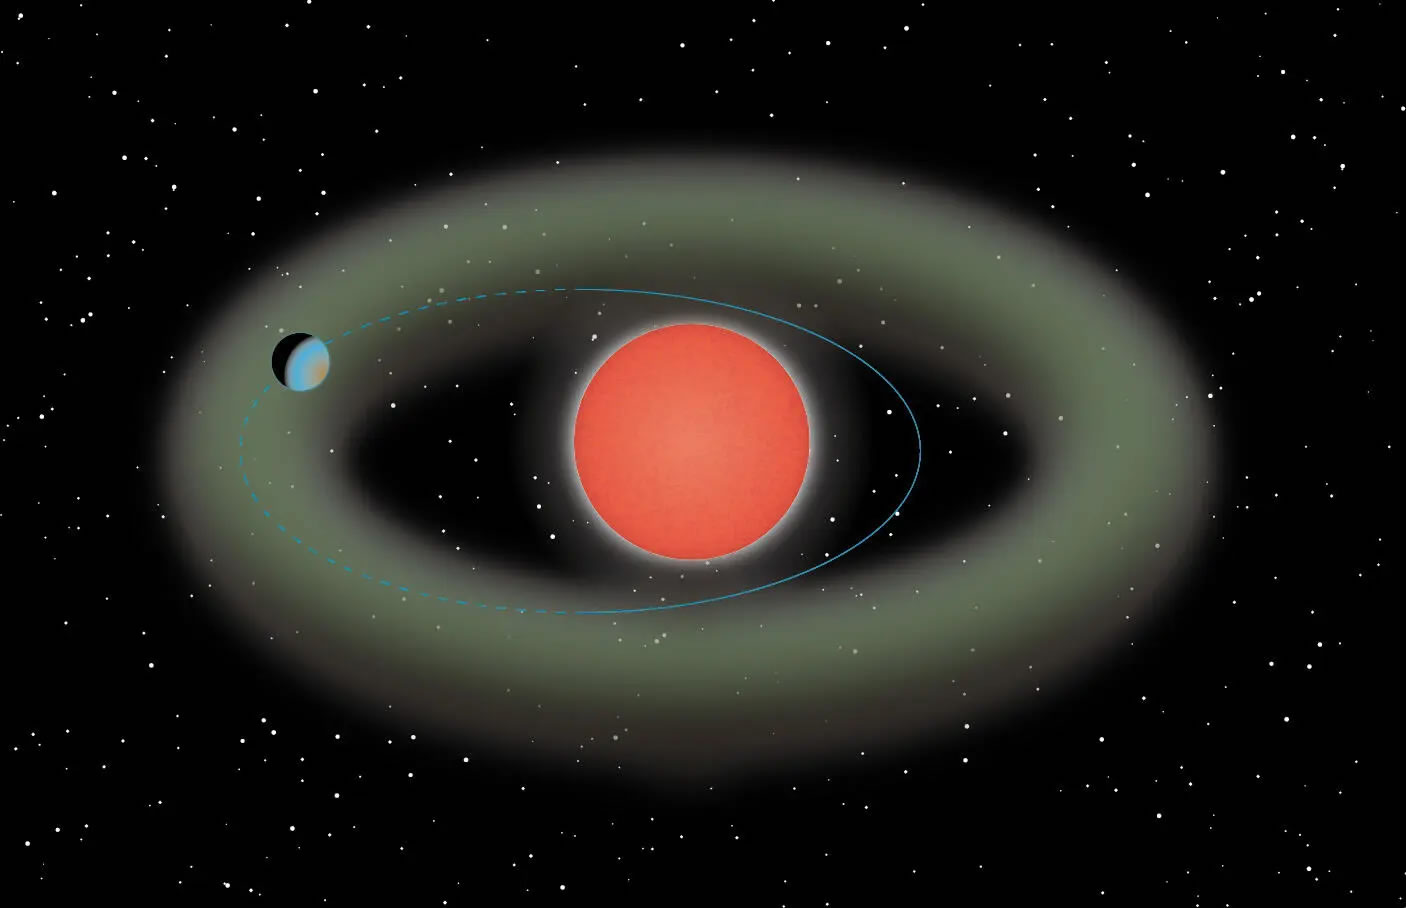 发现一颗围绕红矮星运行的“超级地球”Ross 508 b 可能具有支持生命的关键成分